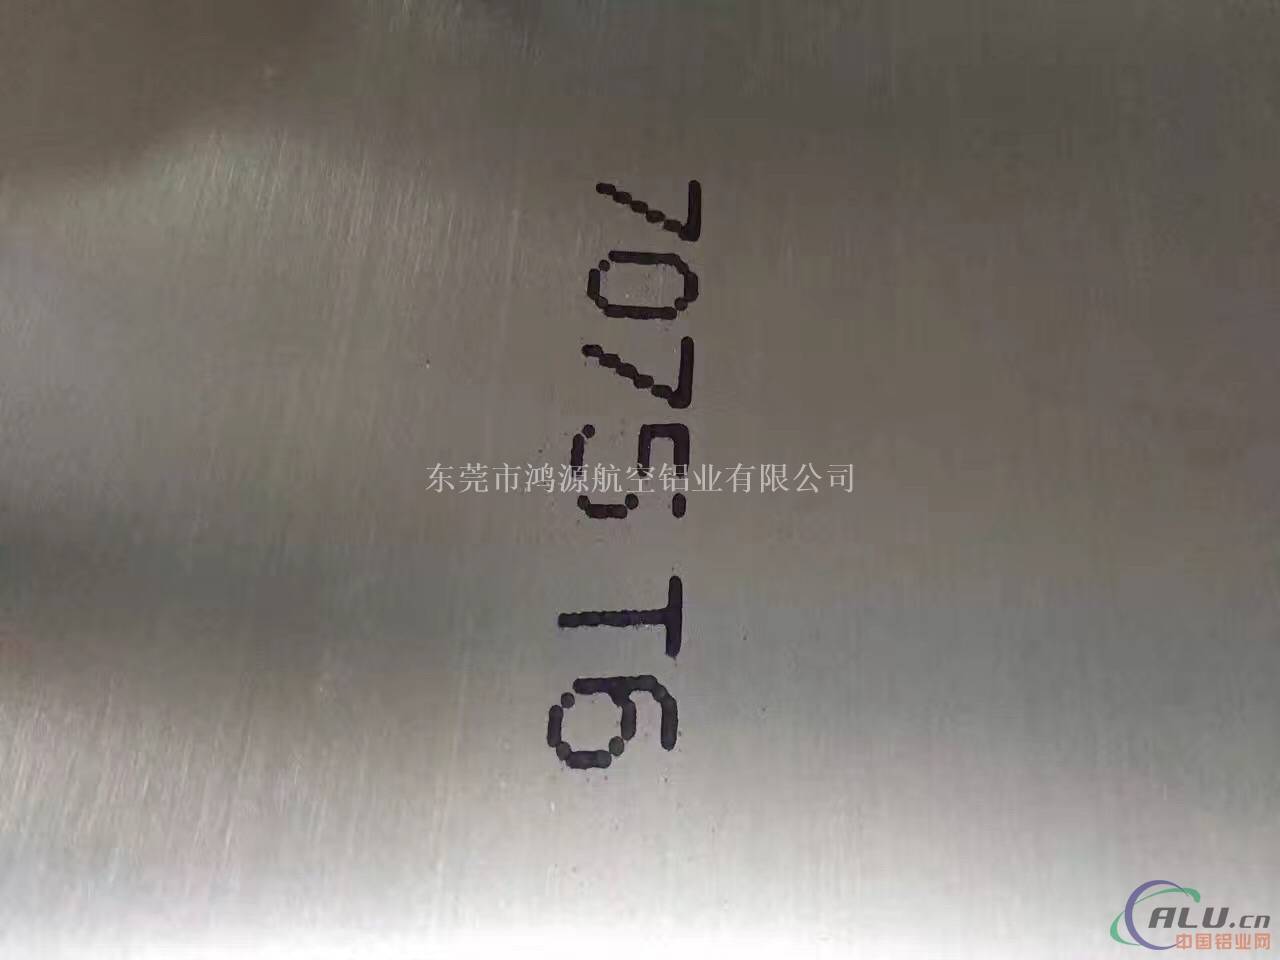 7075铝板 硬铝板厂 中厚铝板价格